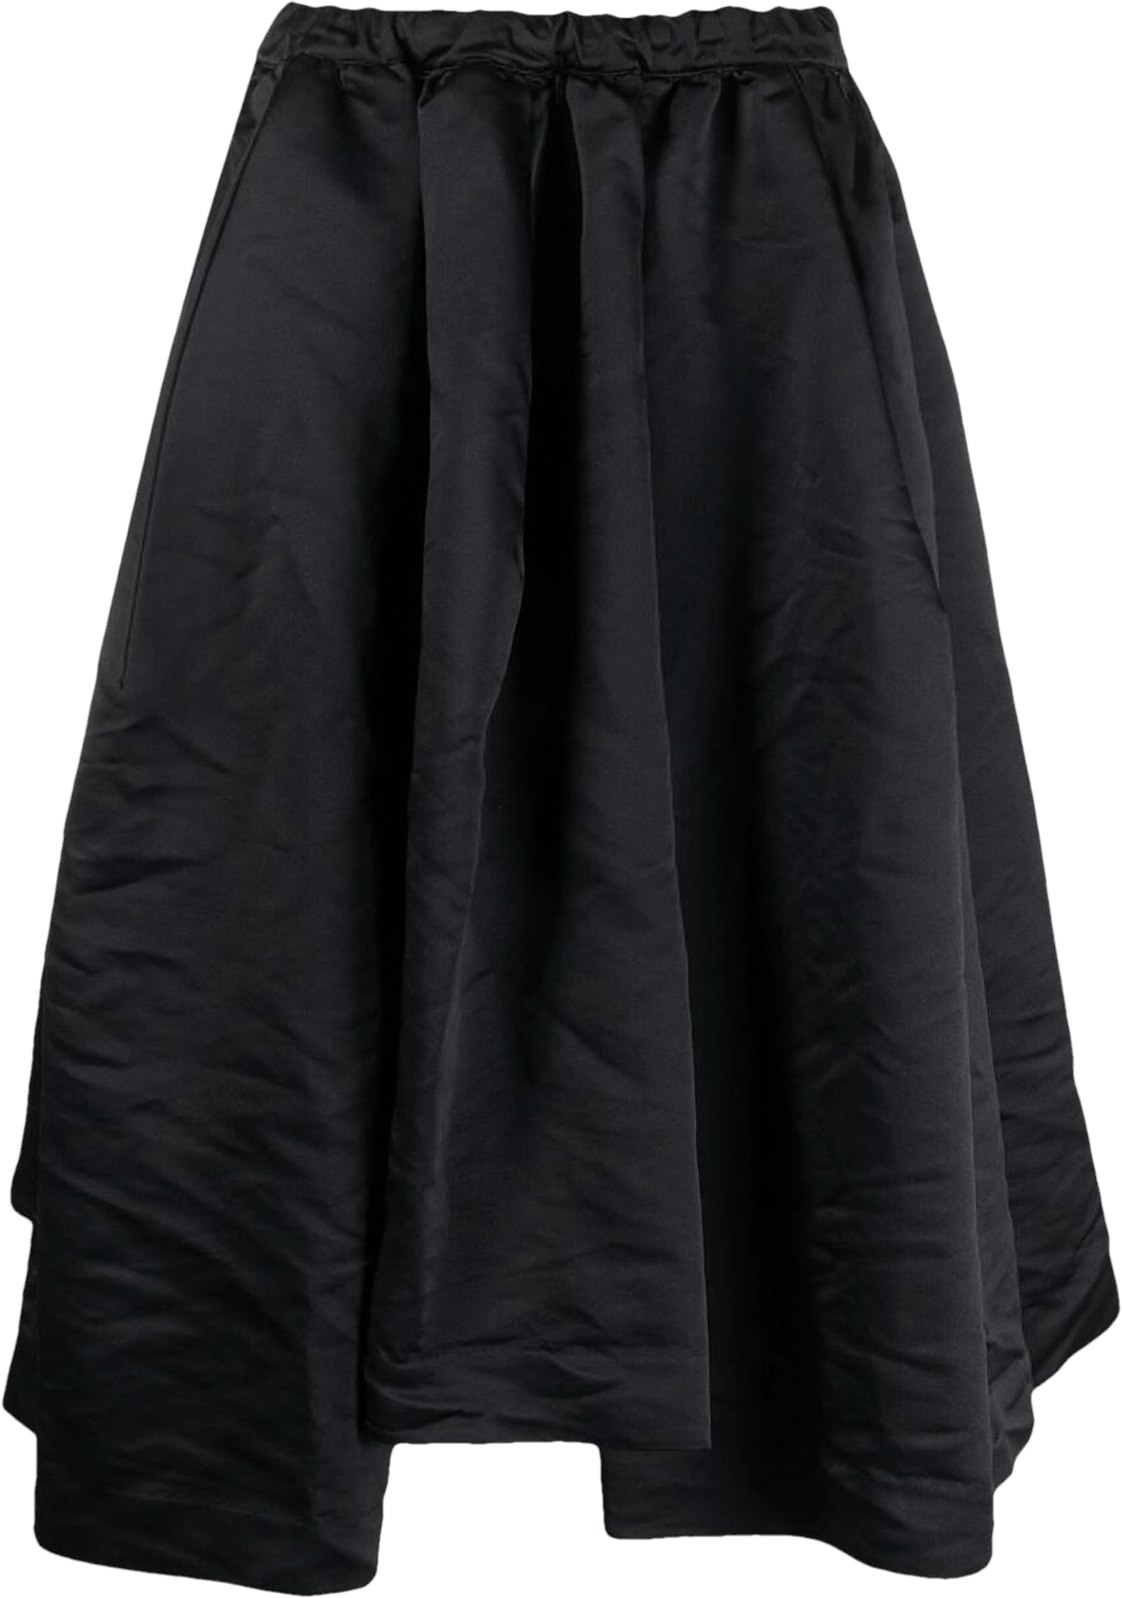 Comme des Garçons Panel Skirt 'Black' - GG-S024-051 - Novelship